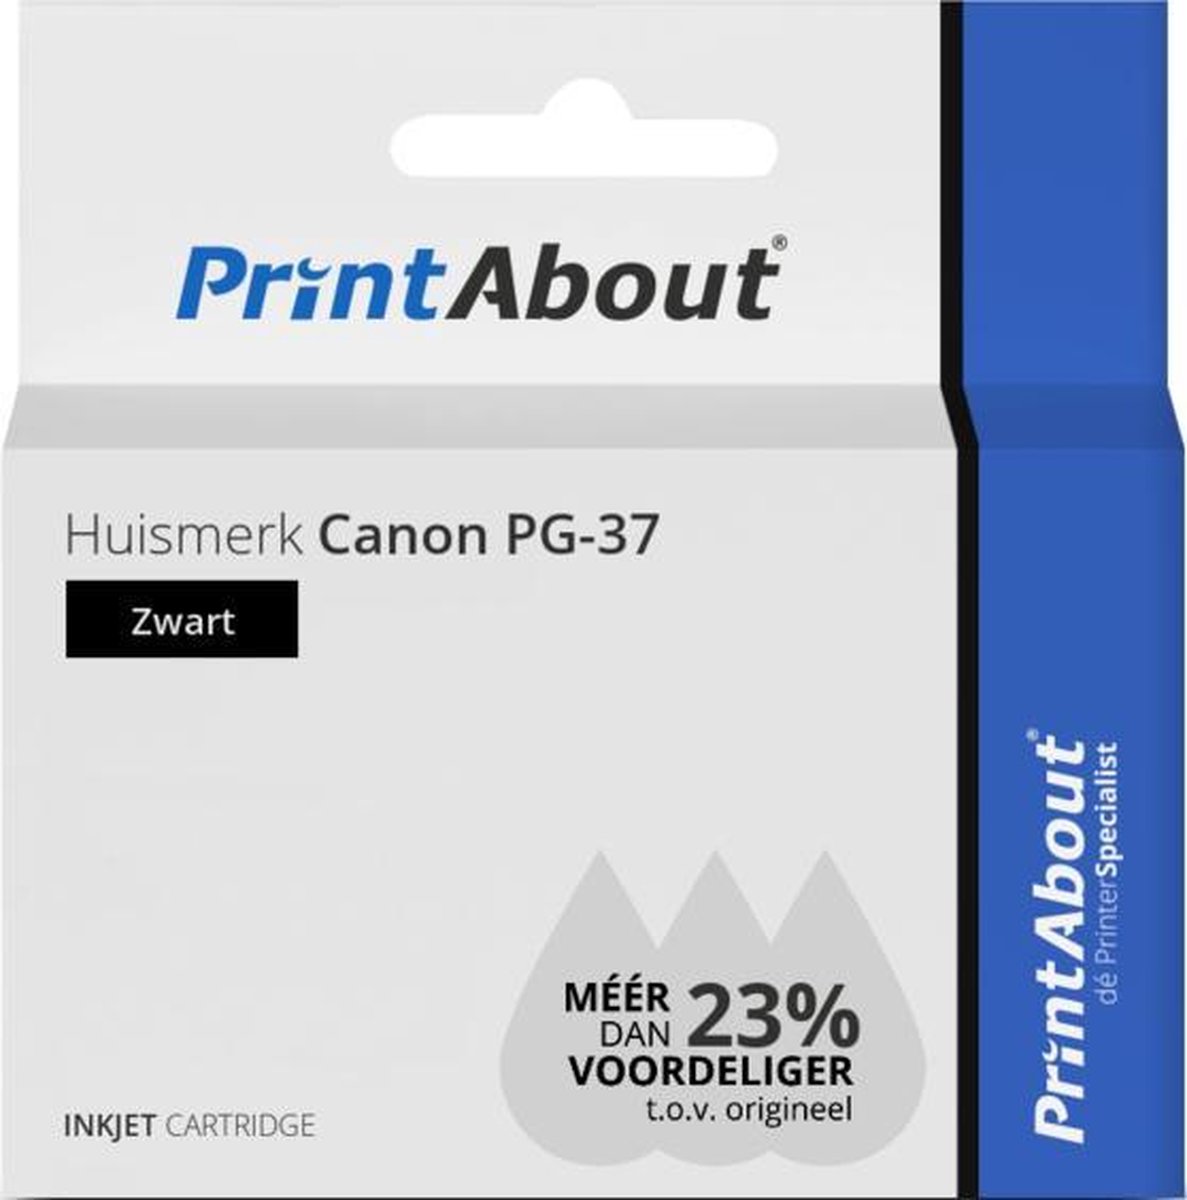 PrintAbout Huismerk Canon PG-37 Inktcartridge - Zwart